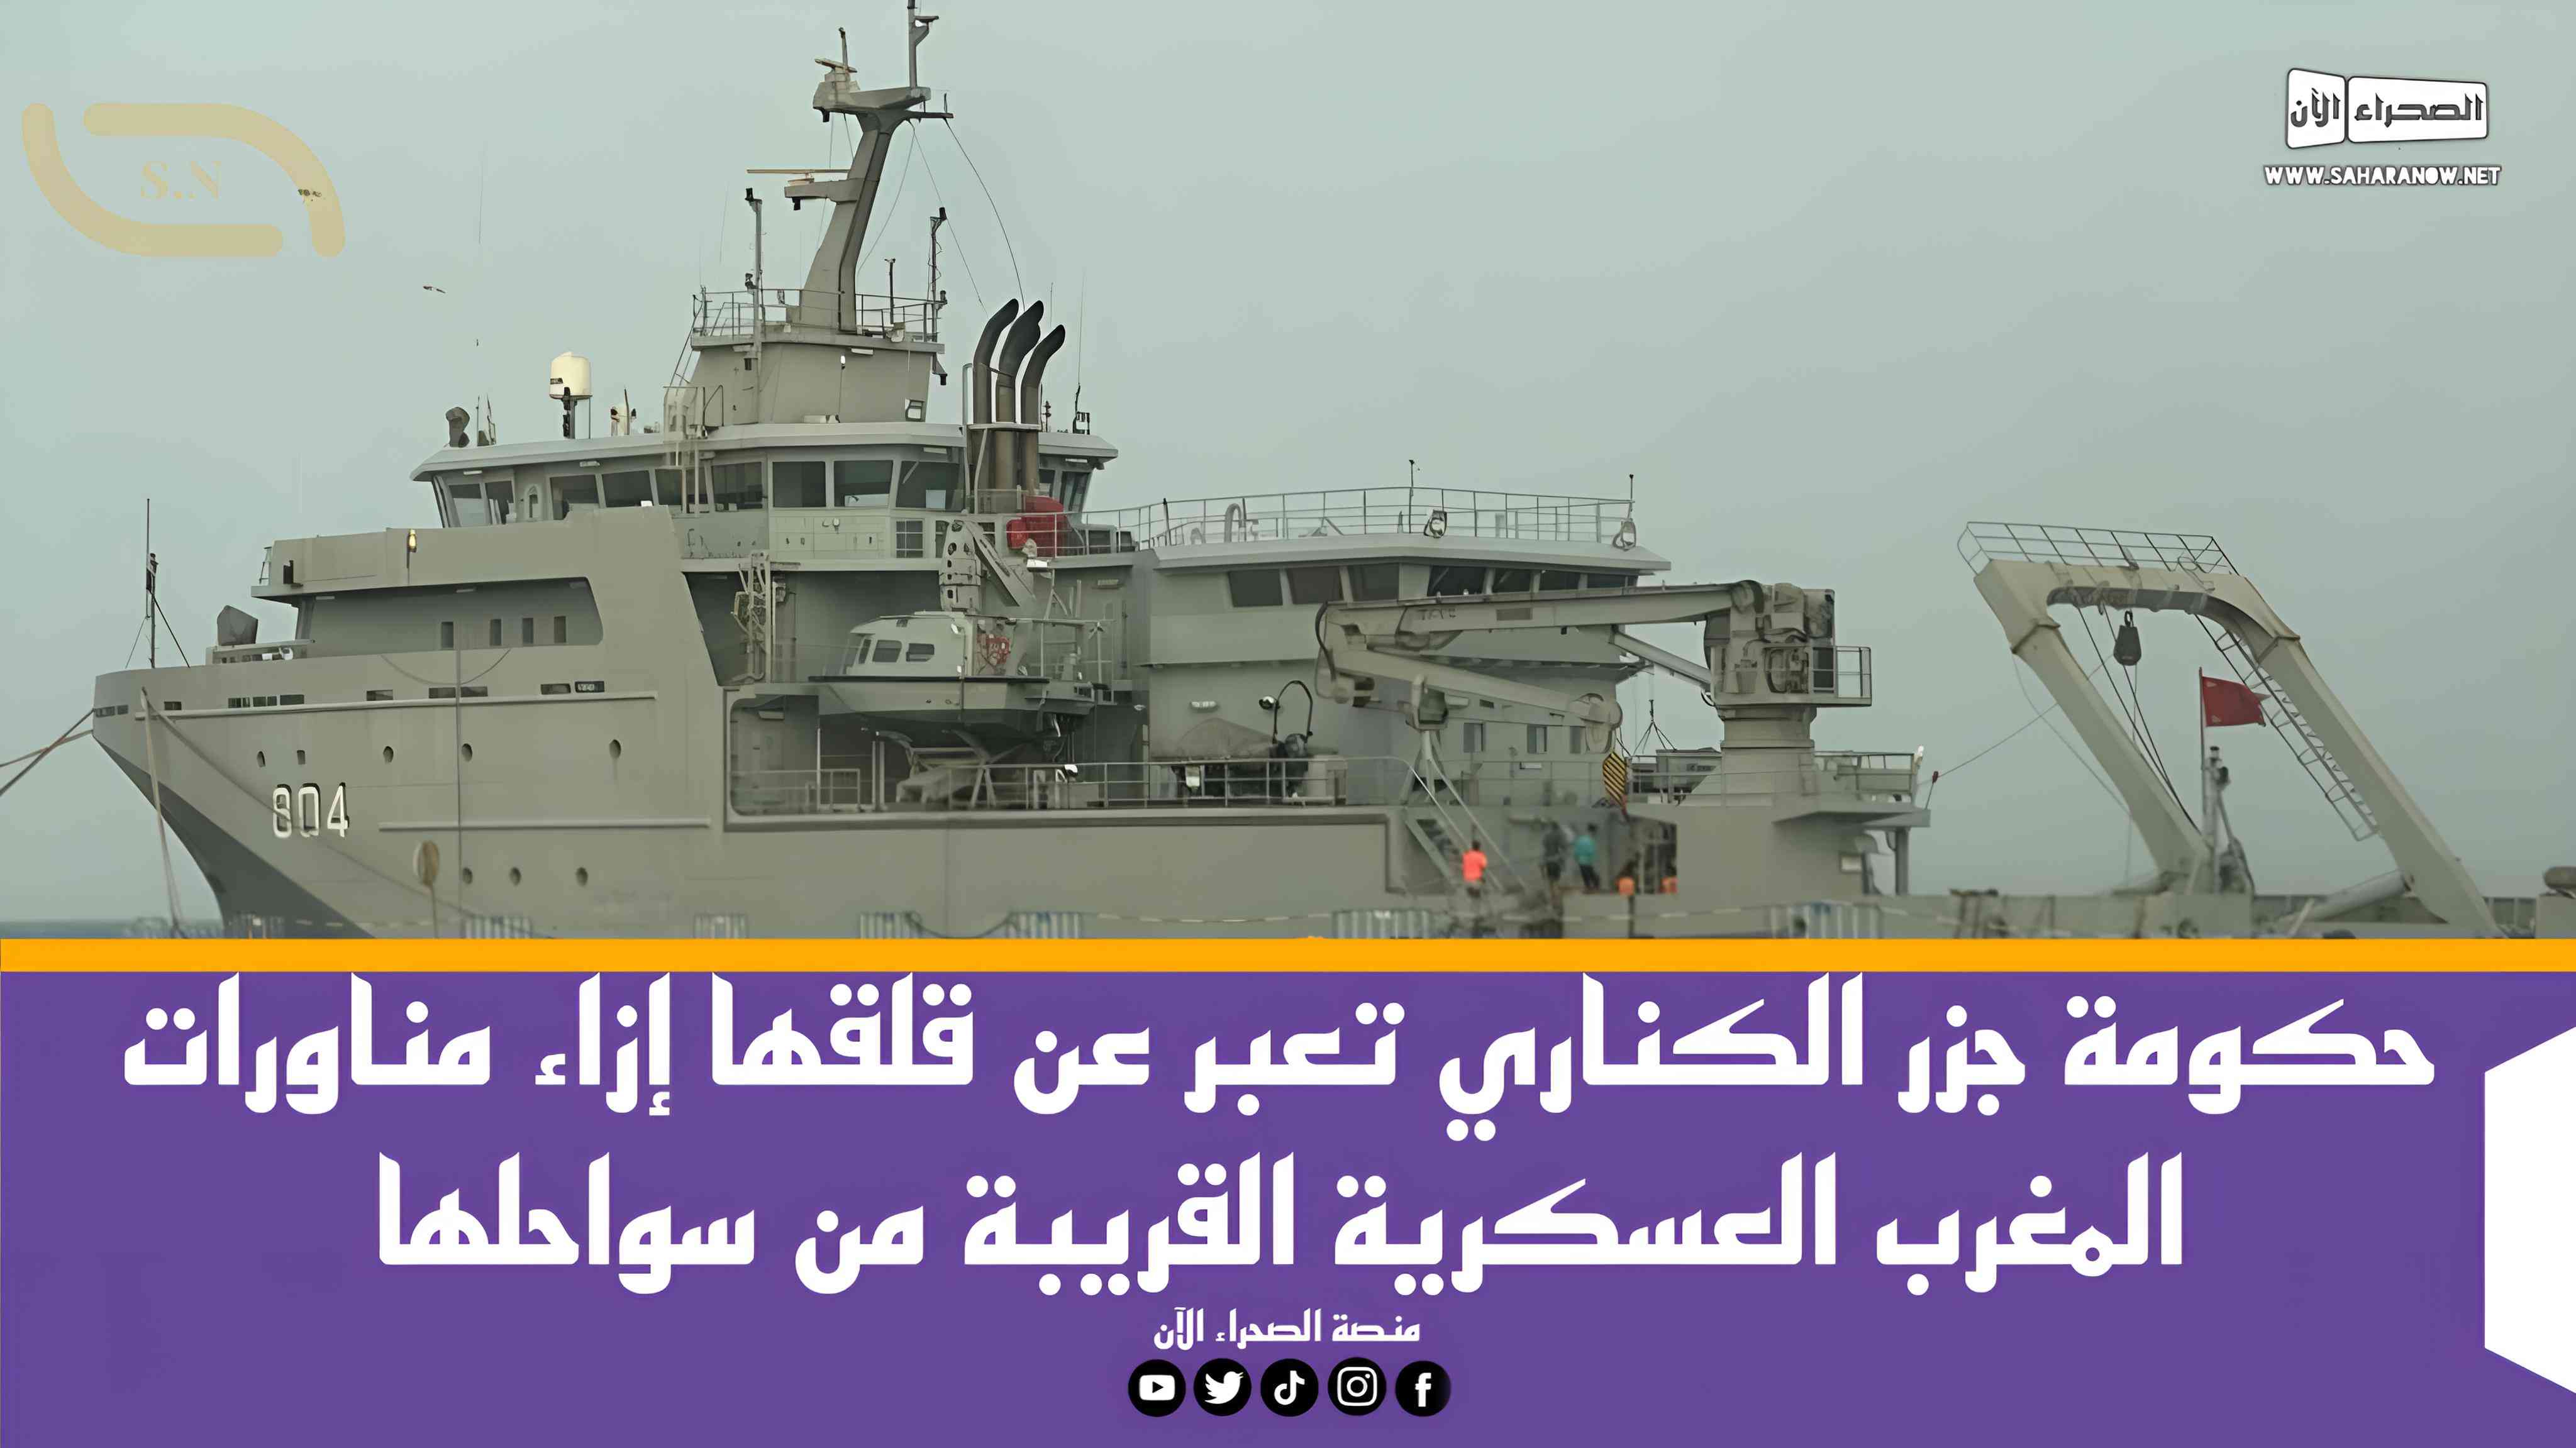 حكومة جزر الكناري تعبر عن قلقها إزاء مناورات المغرب العسكرية القريبة من سواحلها.